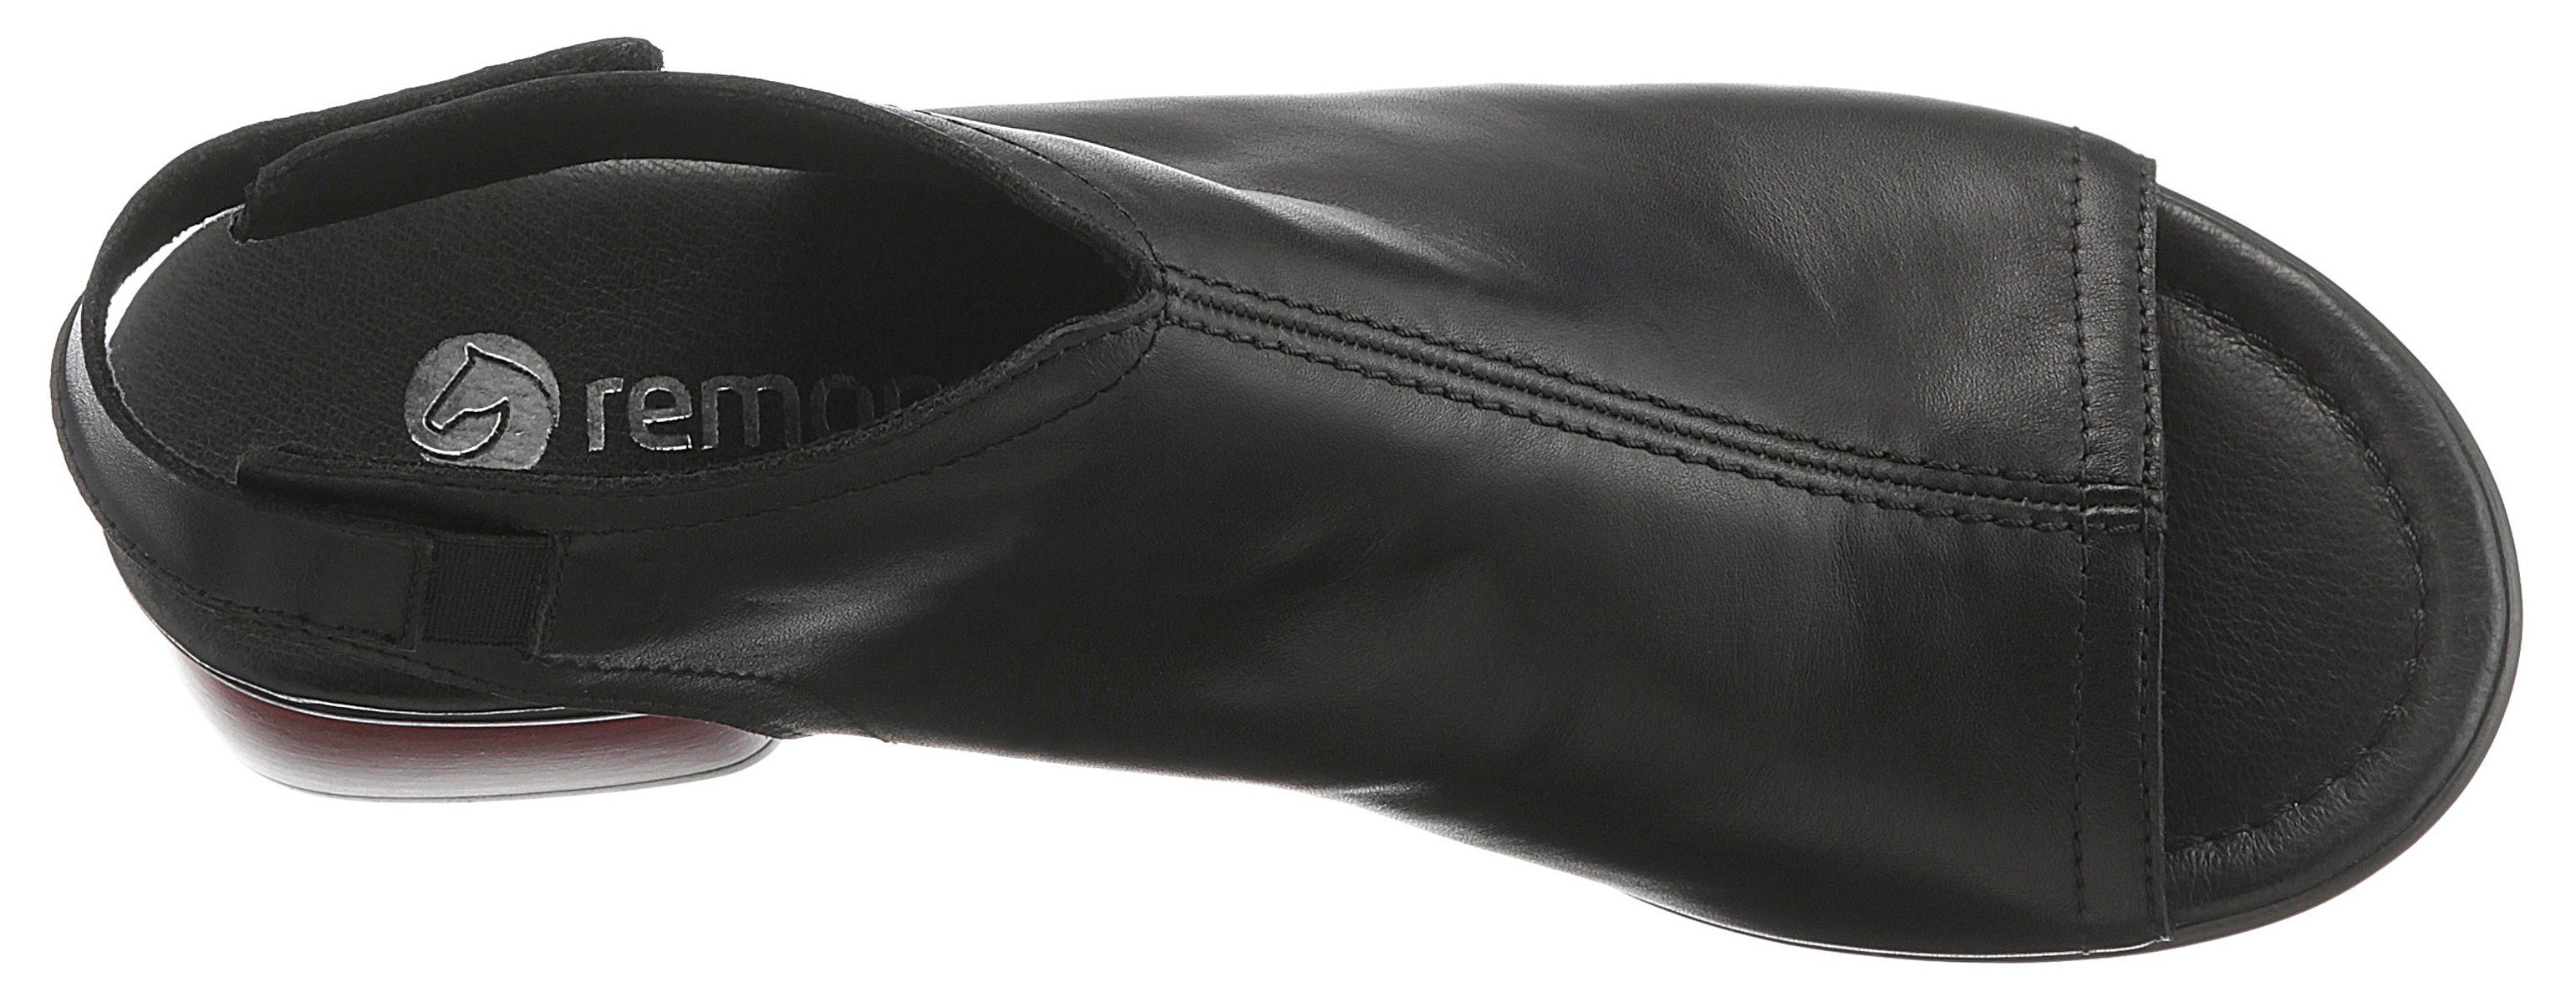 Remonte Sandalette praktischem mit Klettverschluss